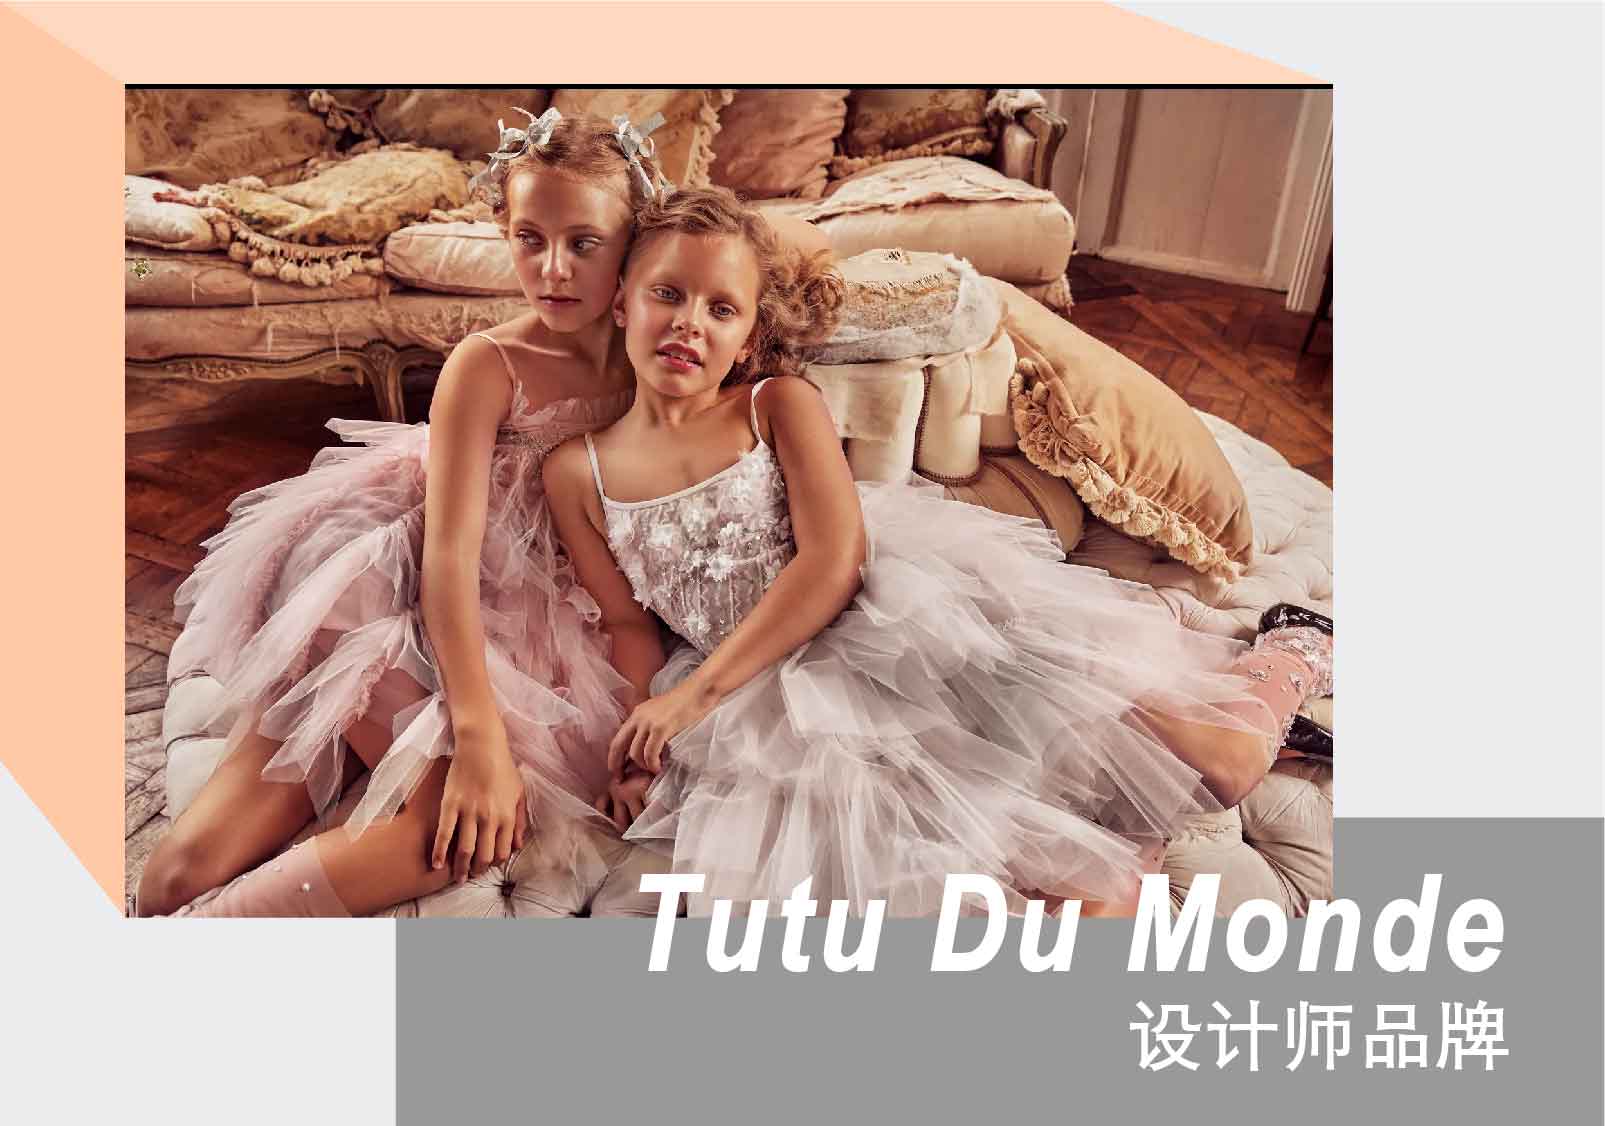 Romantic Ball -- The Designer Brand Tutu Du Monde